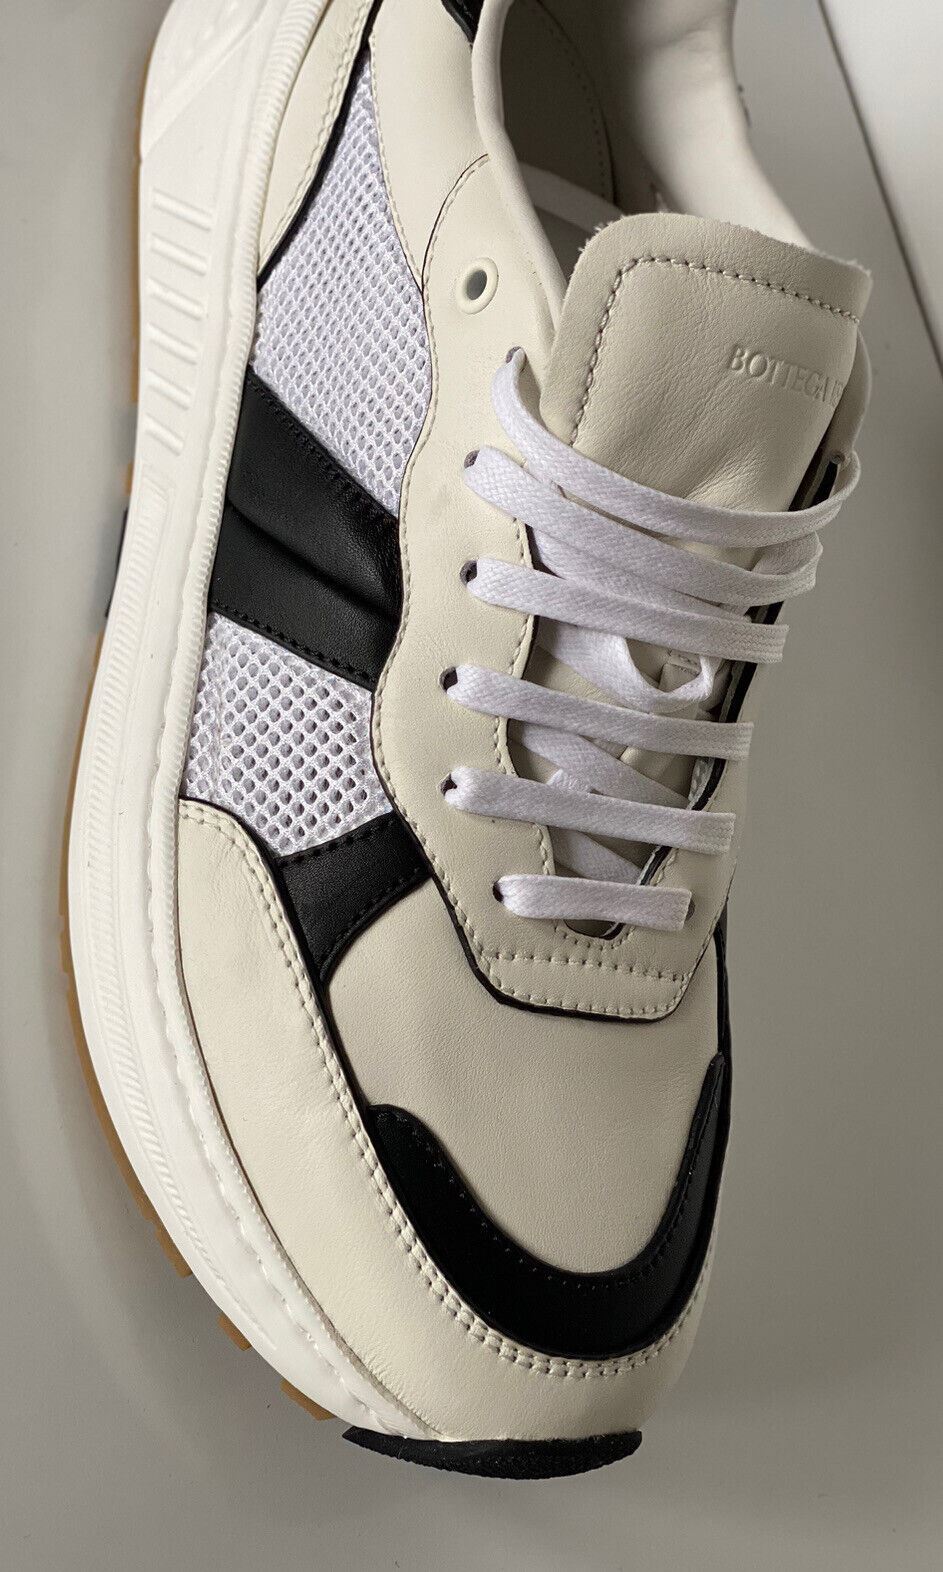 NIB $790 Bottega Veneta Men's Leather & Mesh Sneakers White/Black 12 US 565646